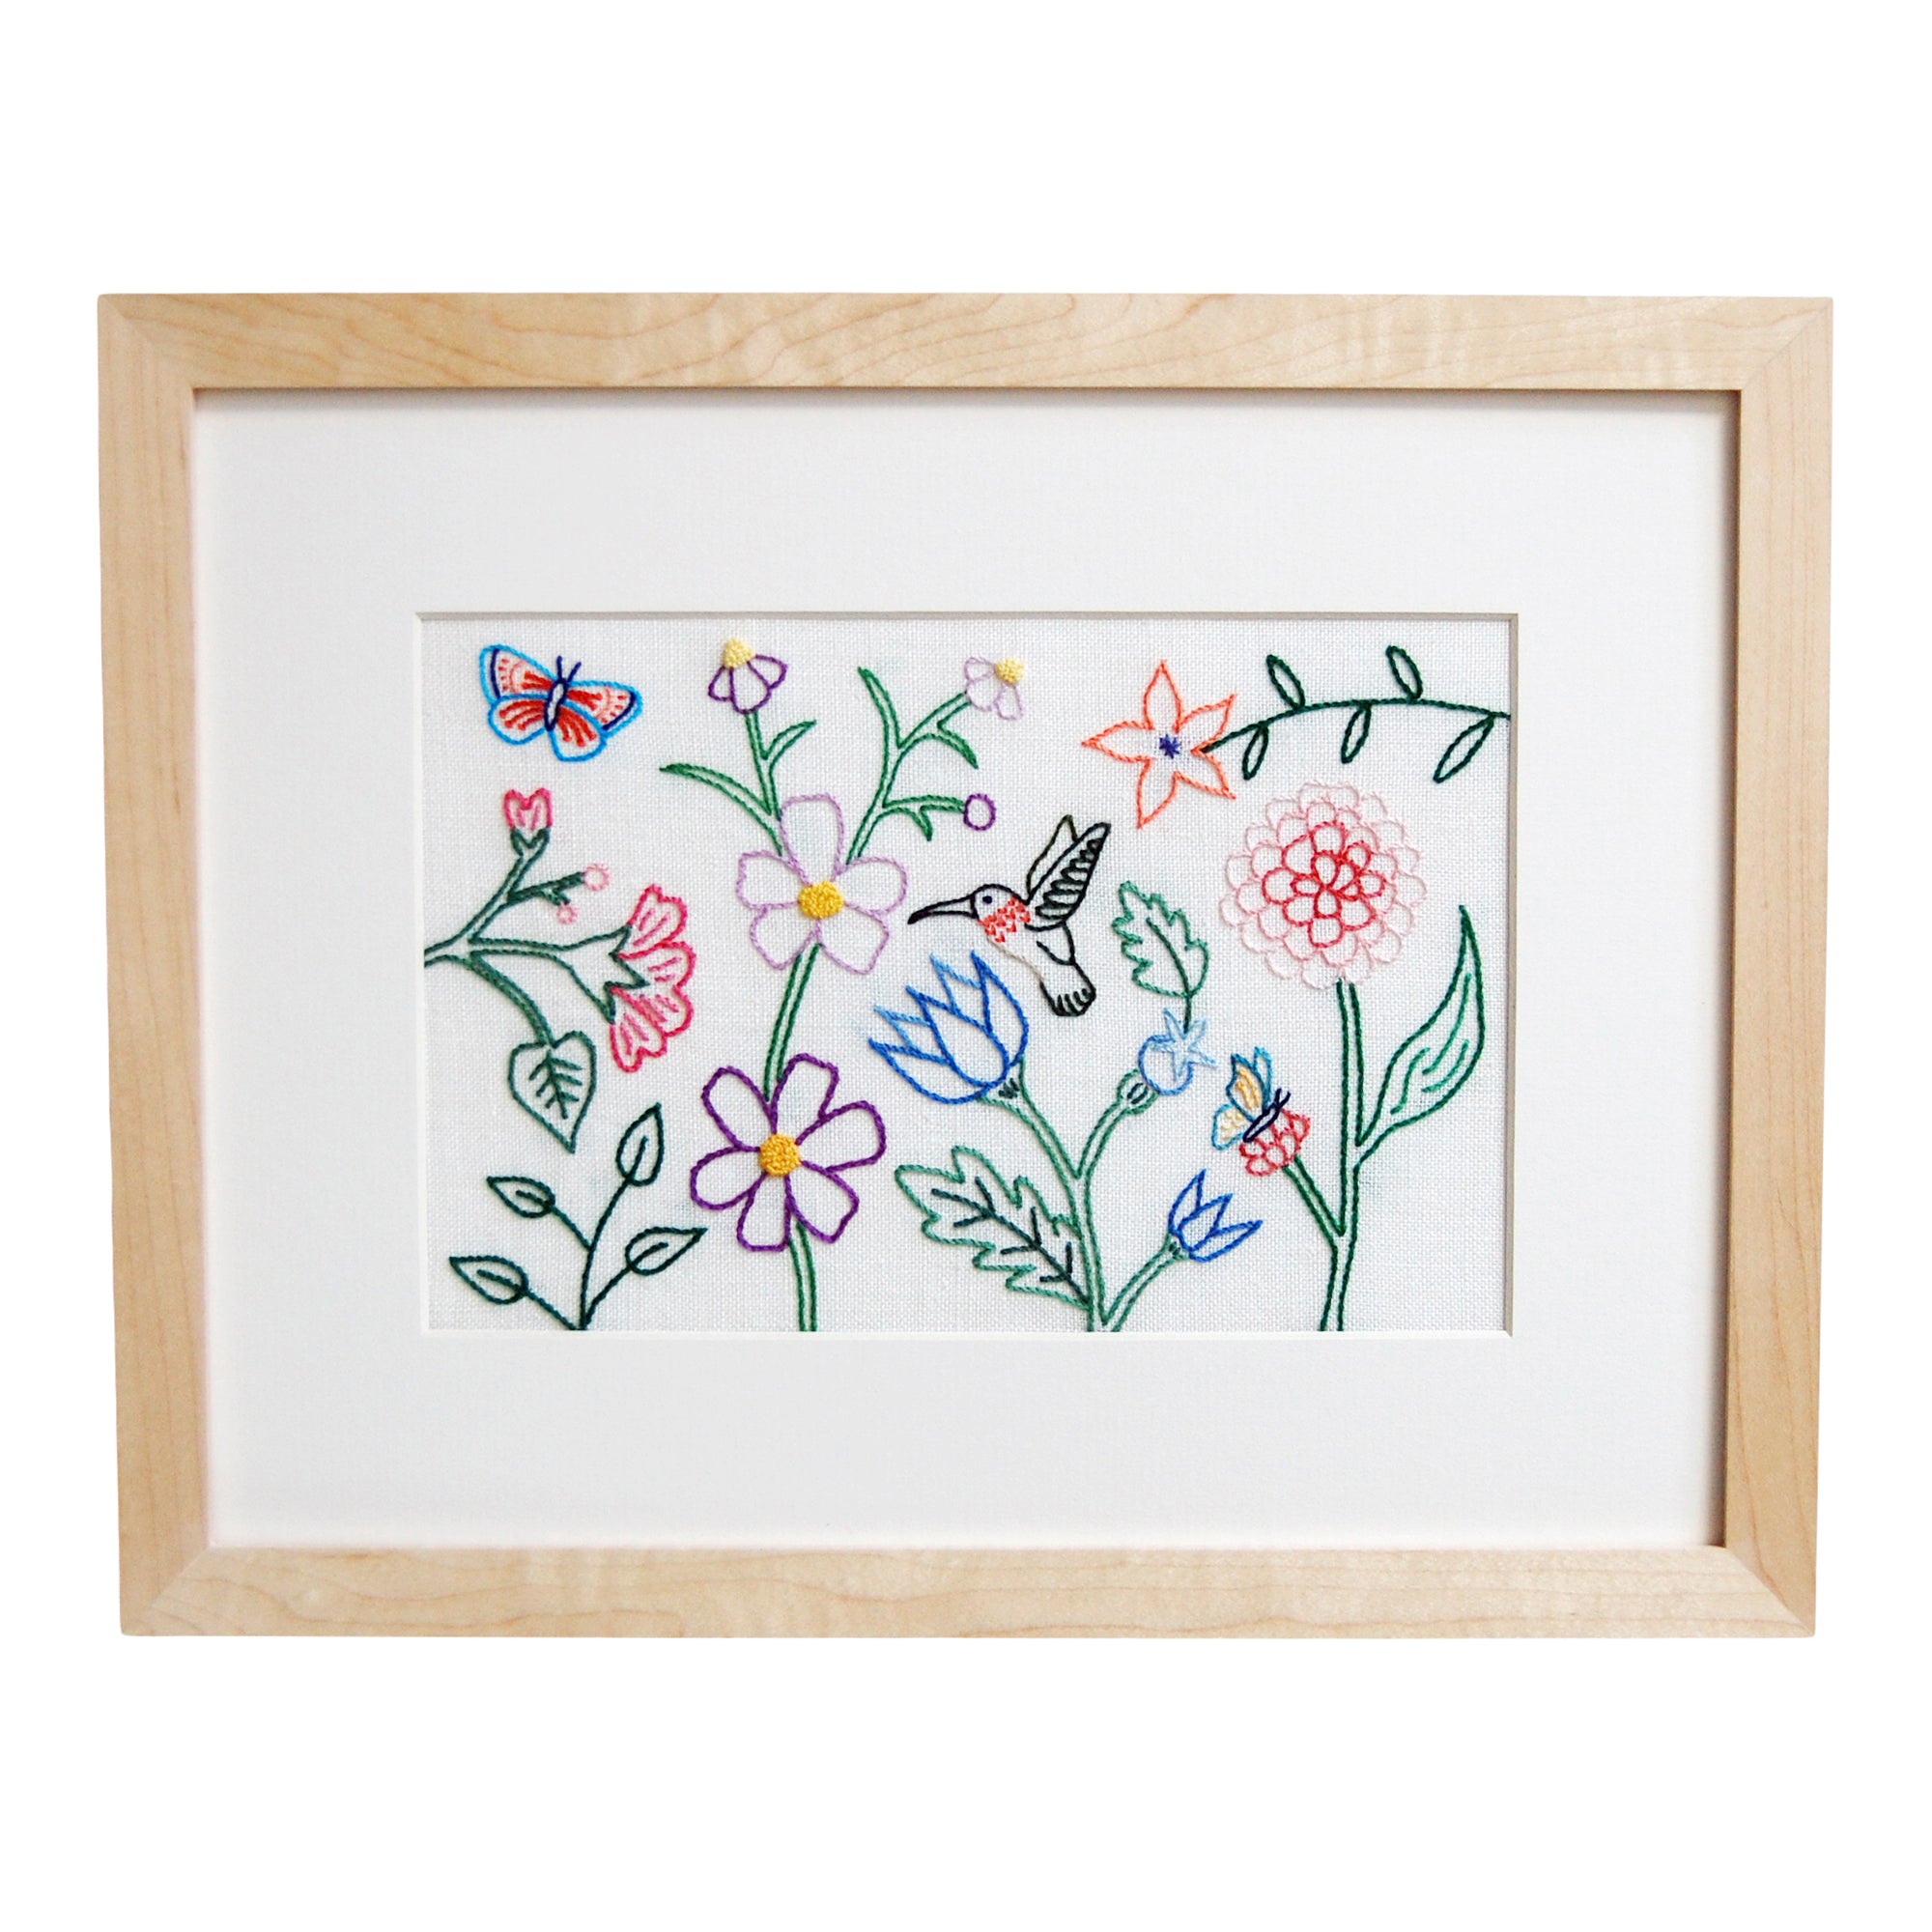 Hummingbird, Butterflies, and Flowers on Cream Linen Hand Embroidered Art